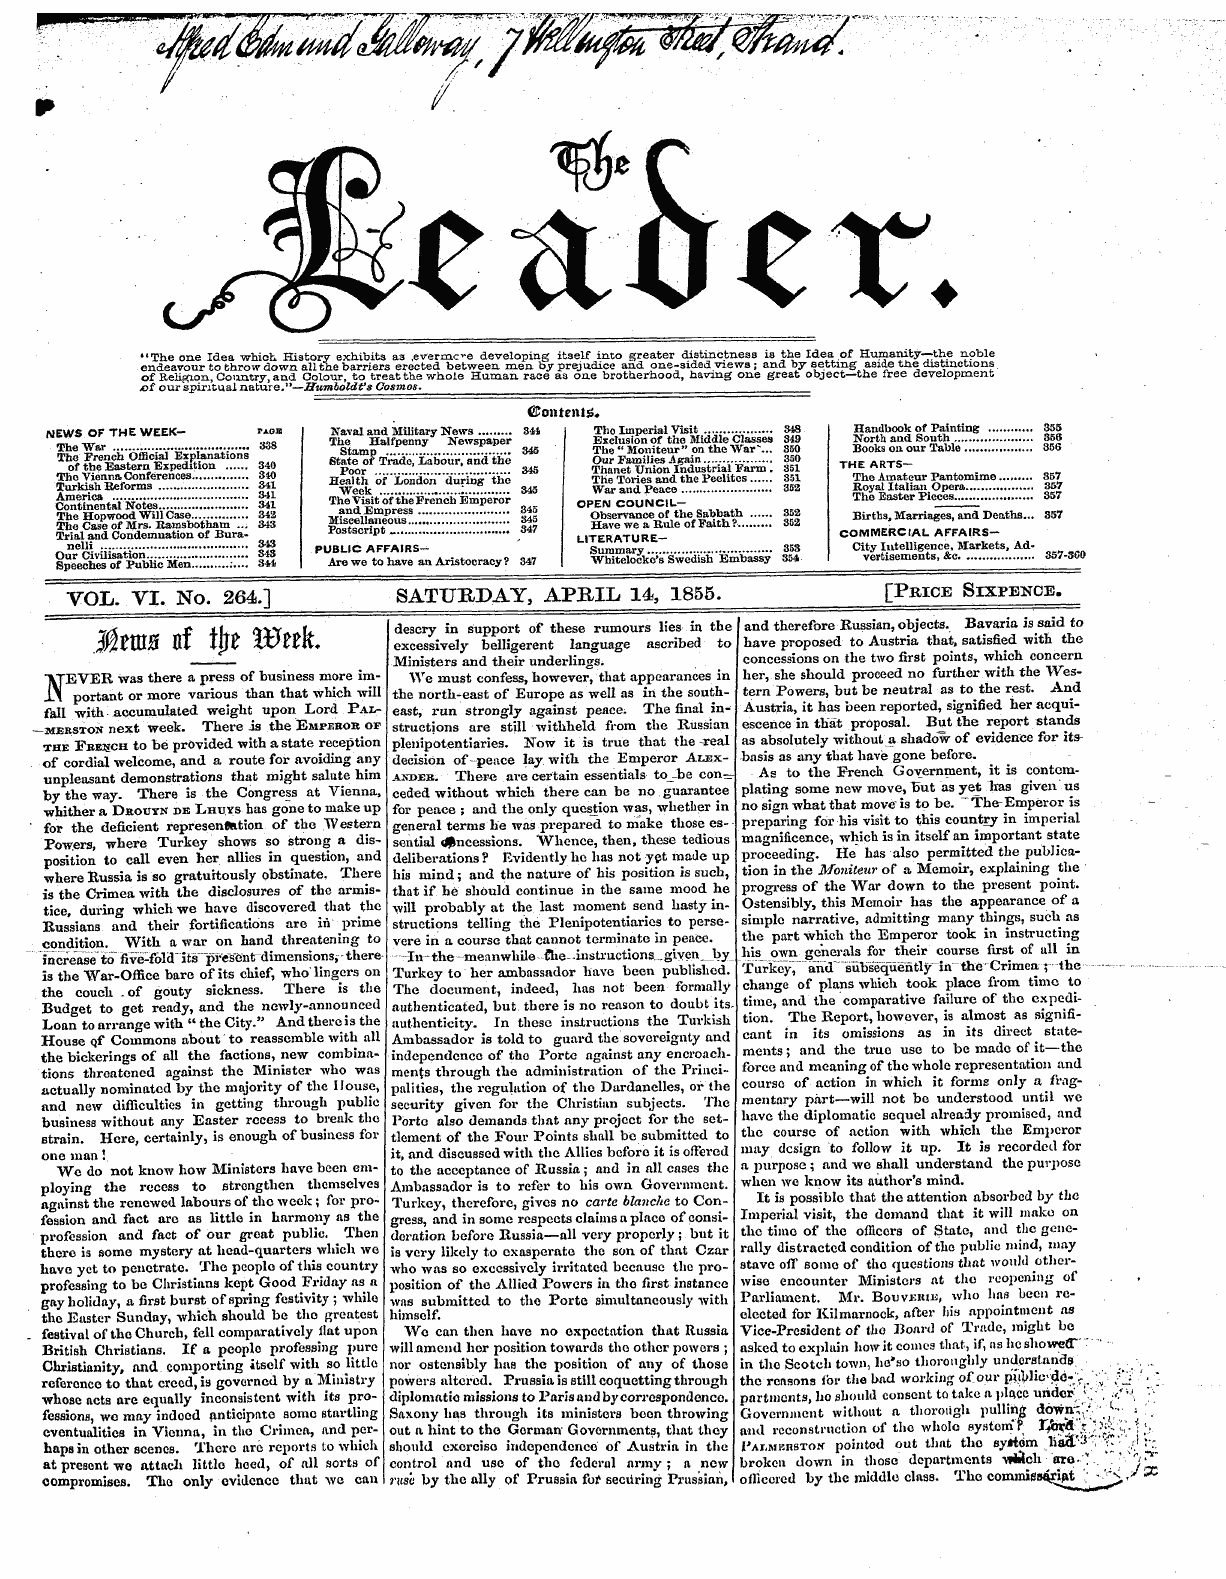 Leader (1850-1860): jS F Y, 2nd edition - * ? - Qfd ^*C < _ X15^' "V Cv -U ^ V ?